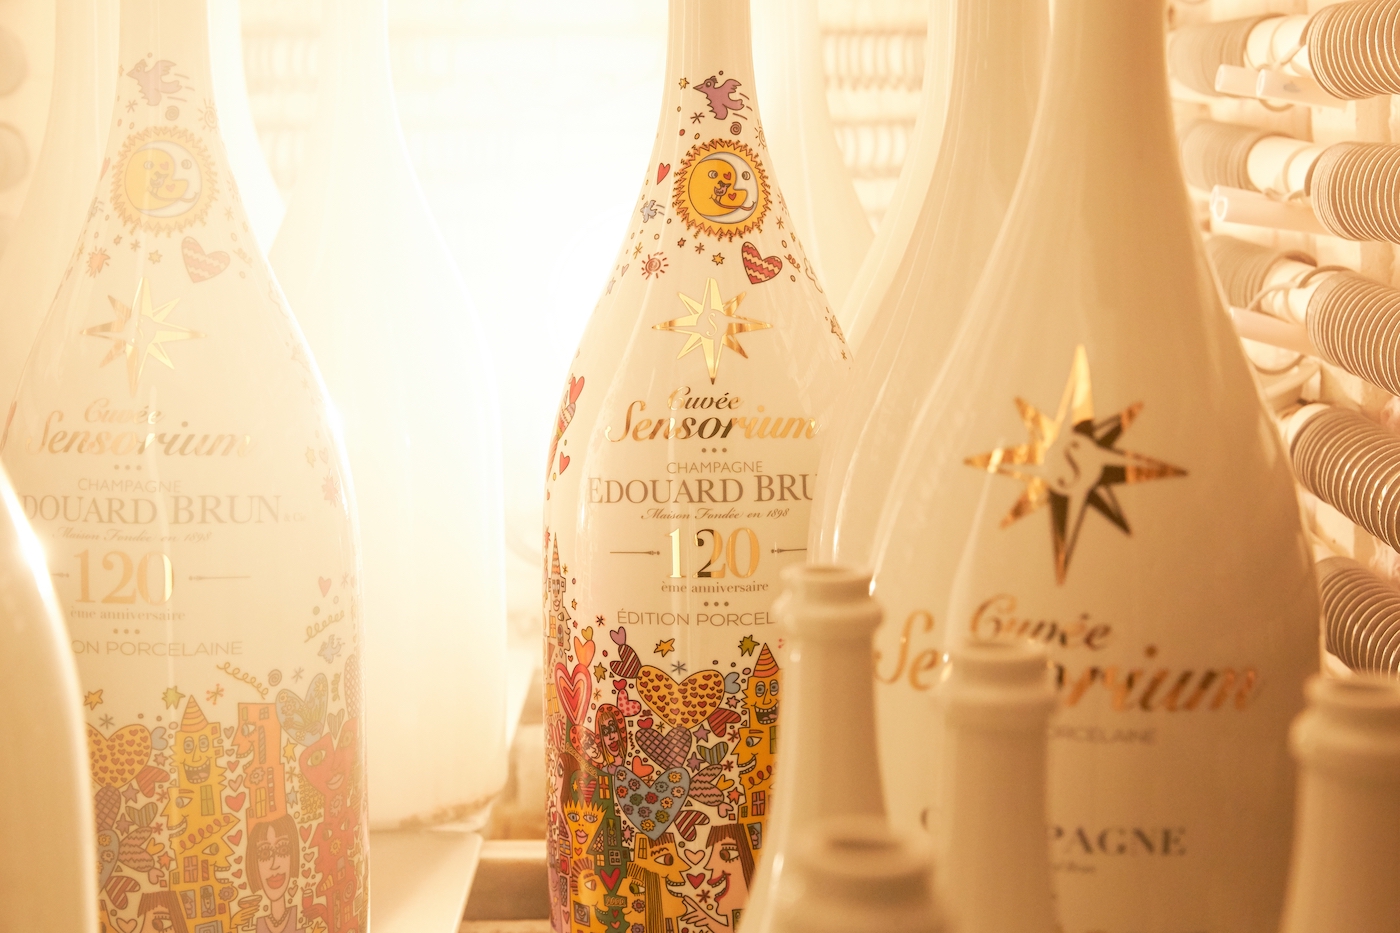 Cuvèe Sensorium stellt ersten Champagner in Porzellanflasche vor 4